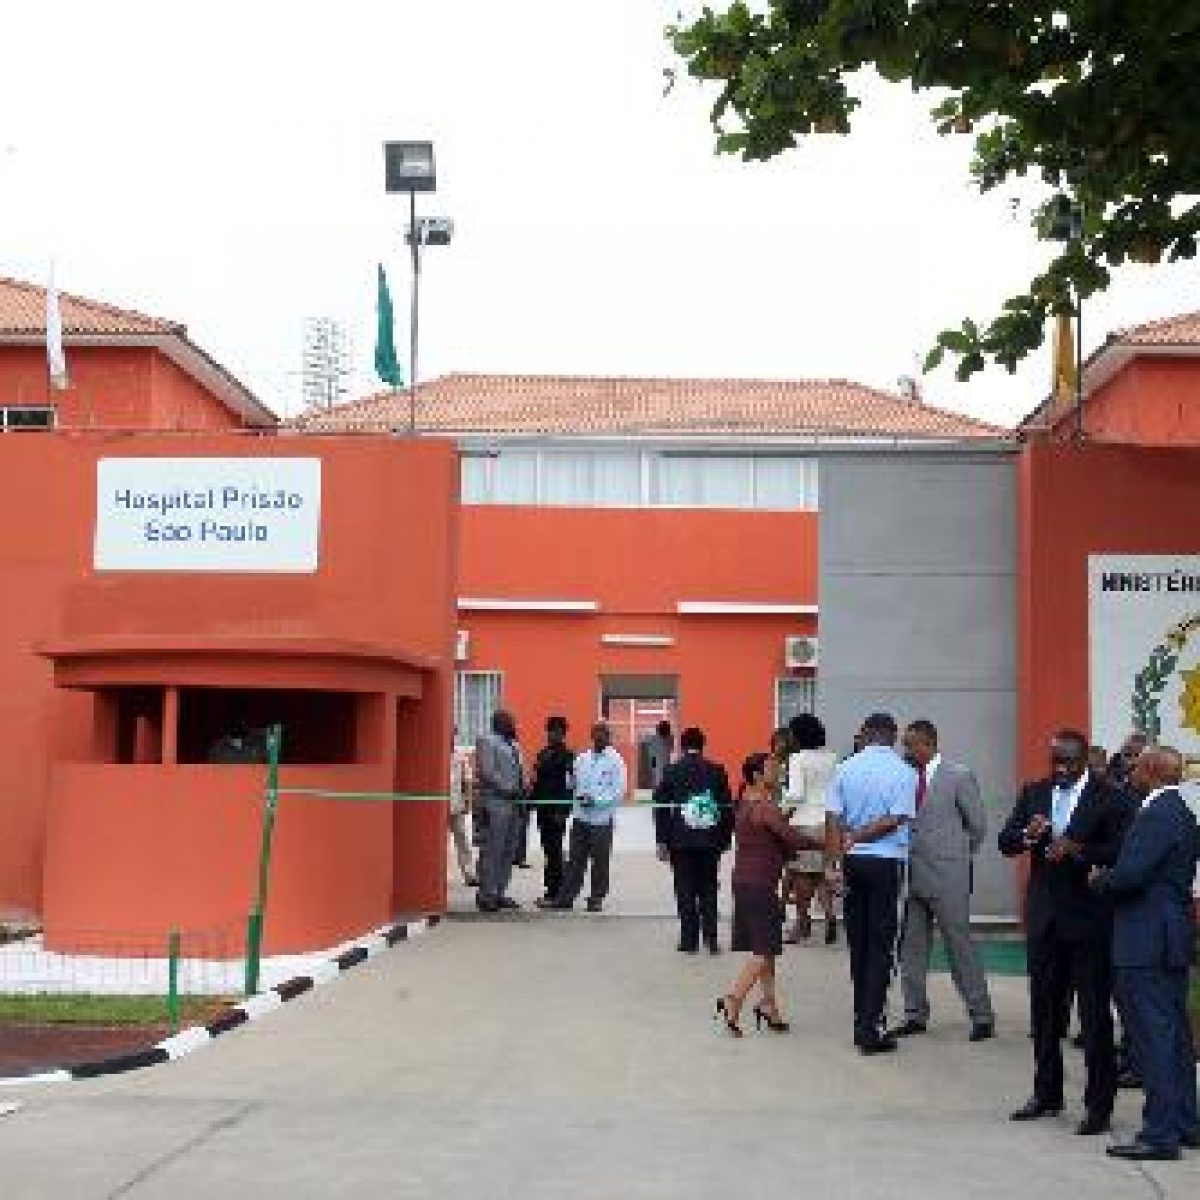 hospital penitenciario de S. Paulo